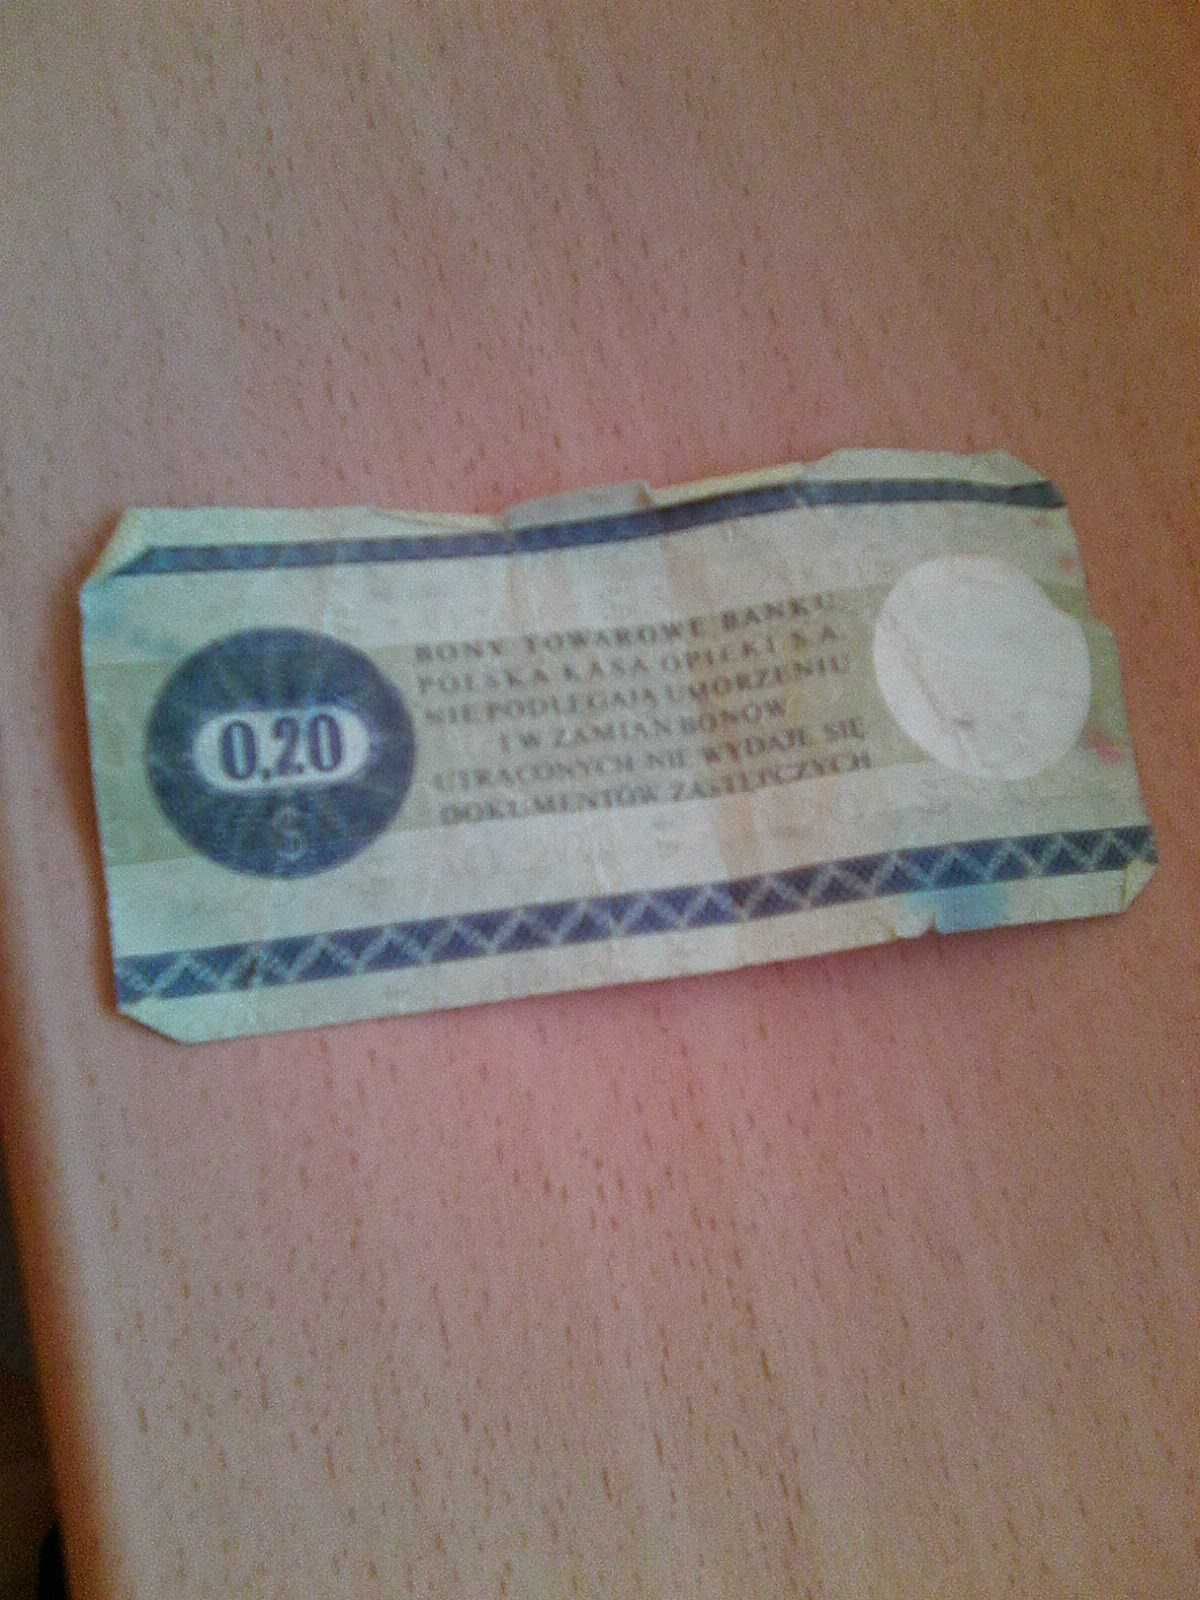 Bon Towarowy 0,20 $ 1979 rok